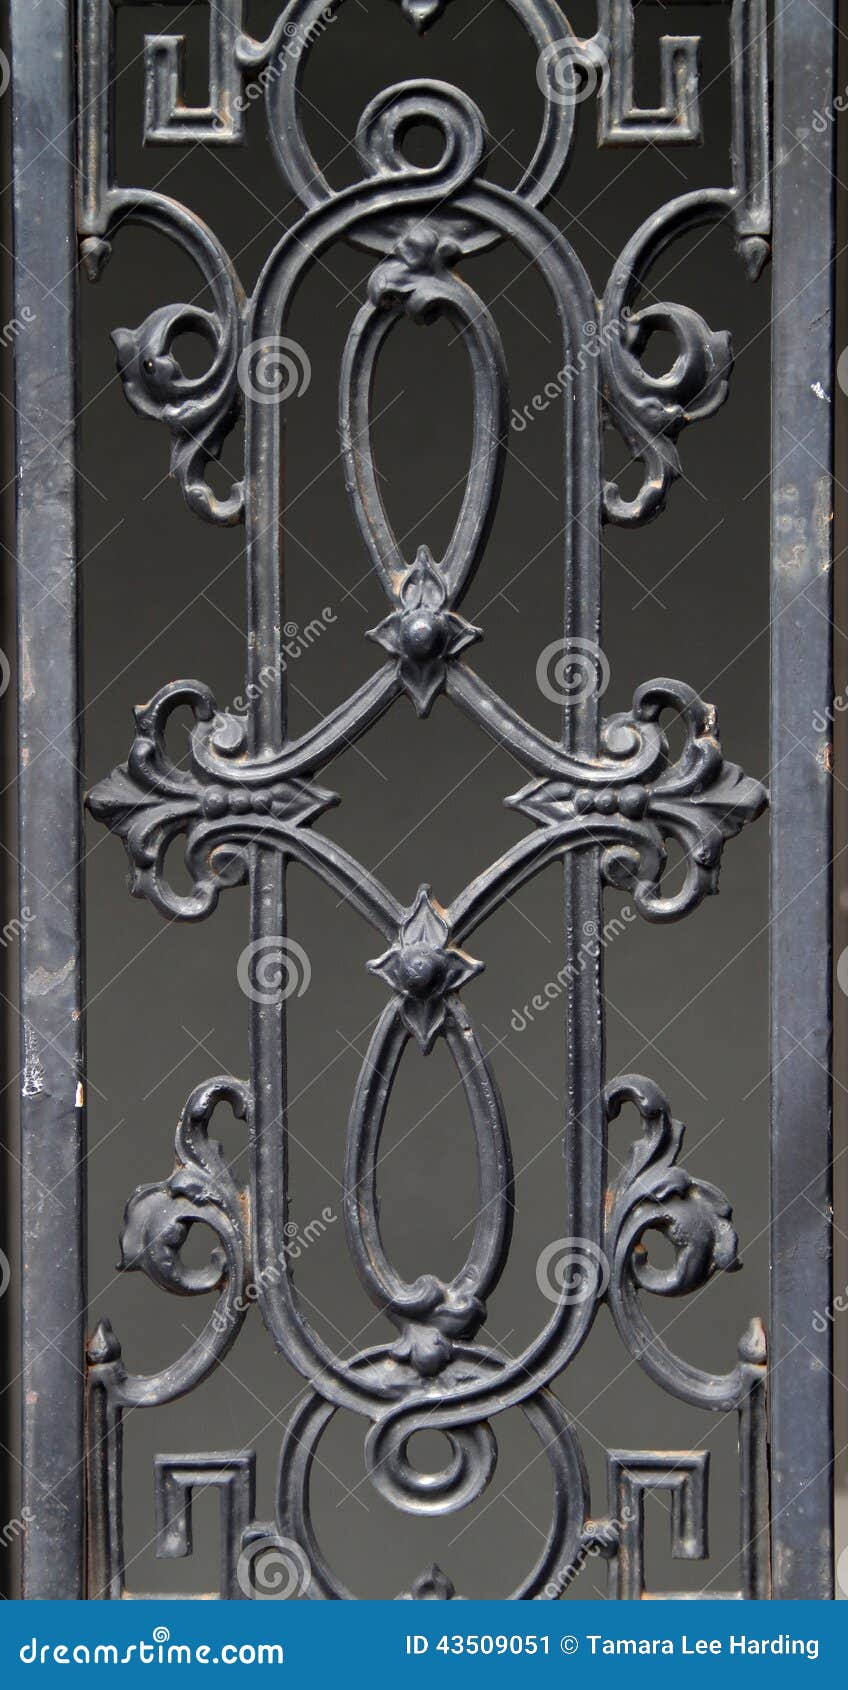 Decorative Wrought Iron Fence Detail Stock Image - Image ...